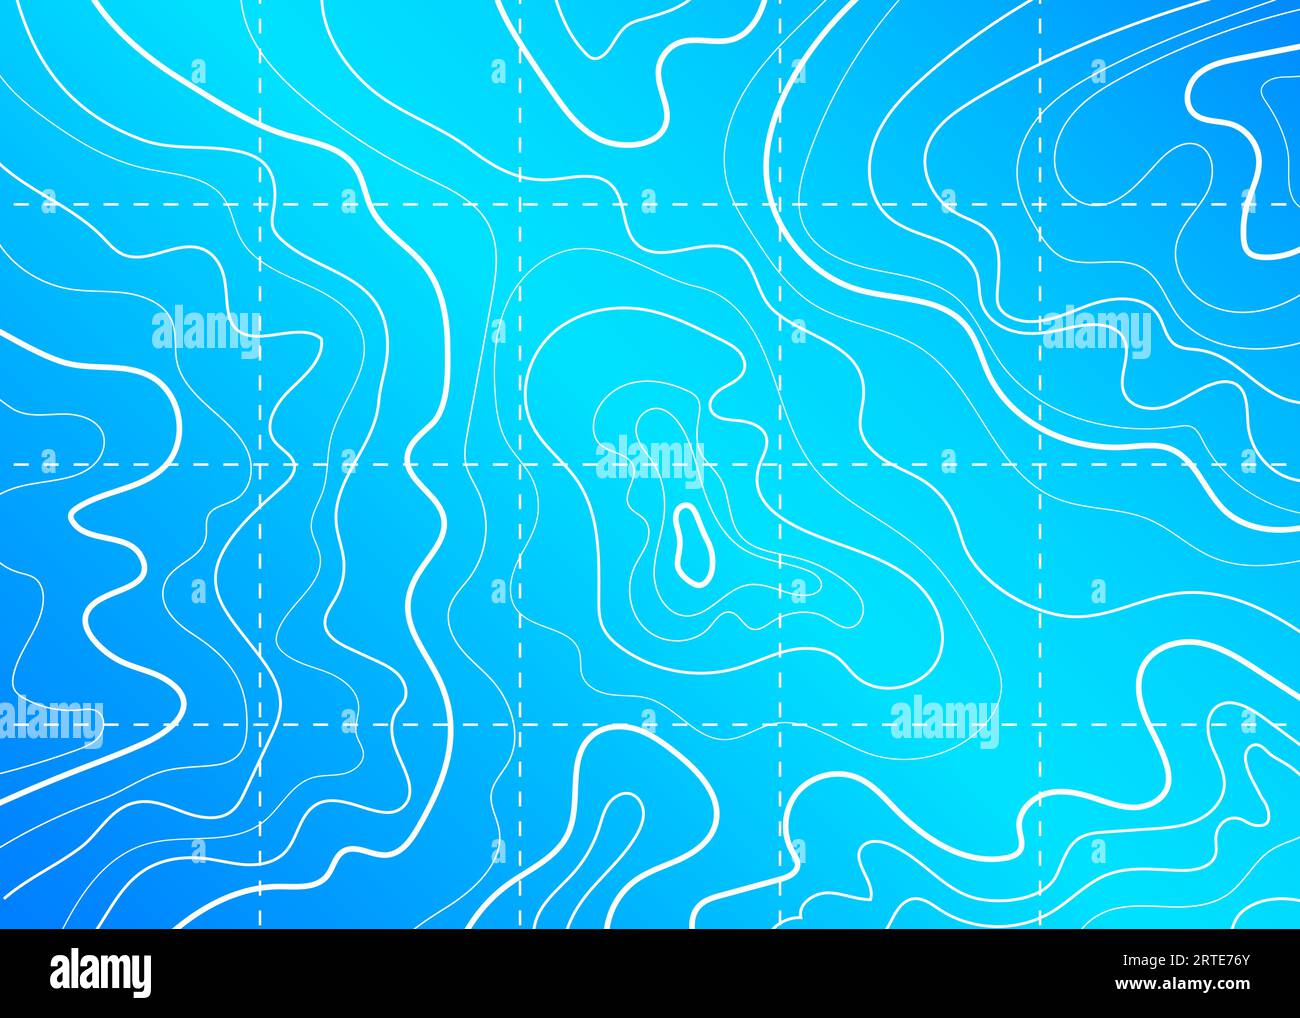 Carte topographique de contour de mer et d'océan sur fond bleu, topographie vectorielle. Modèle de ligne de contour d'un paysage géographique marin abstrait avec courbes de profondeur et de route de cours d'eau, grille de latitude et de longitude Illustration de Vecteur